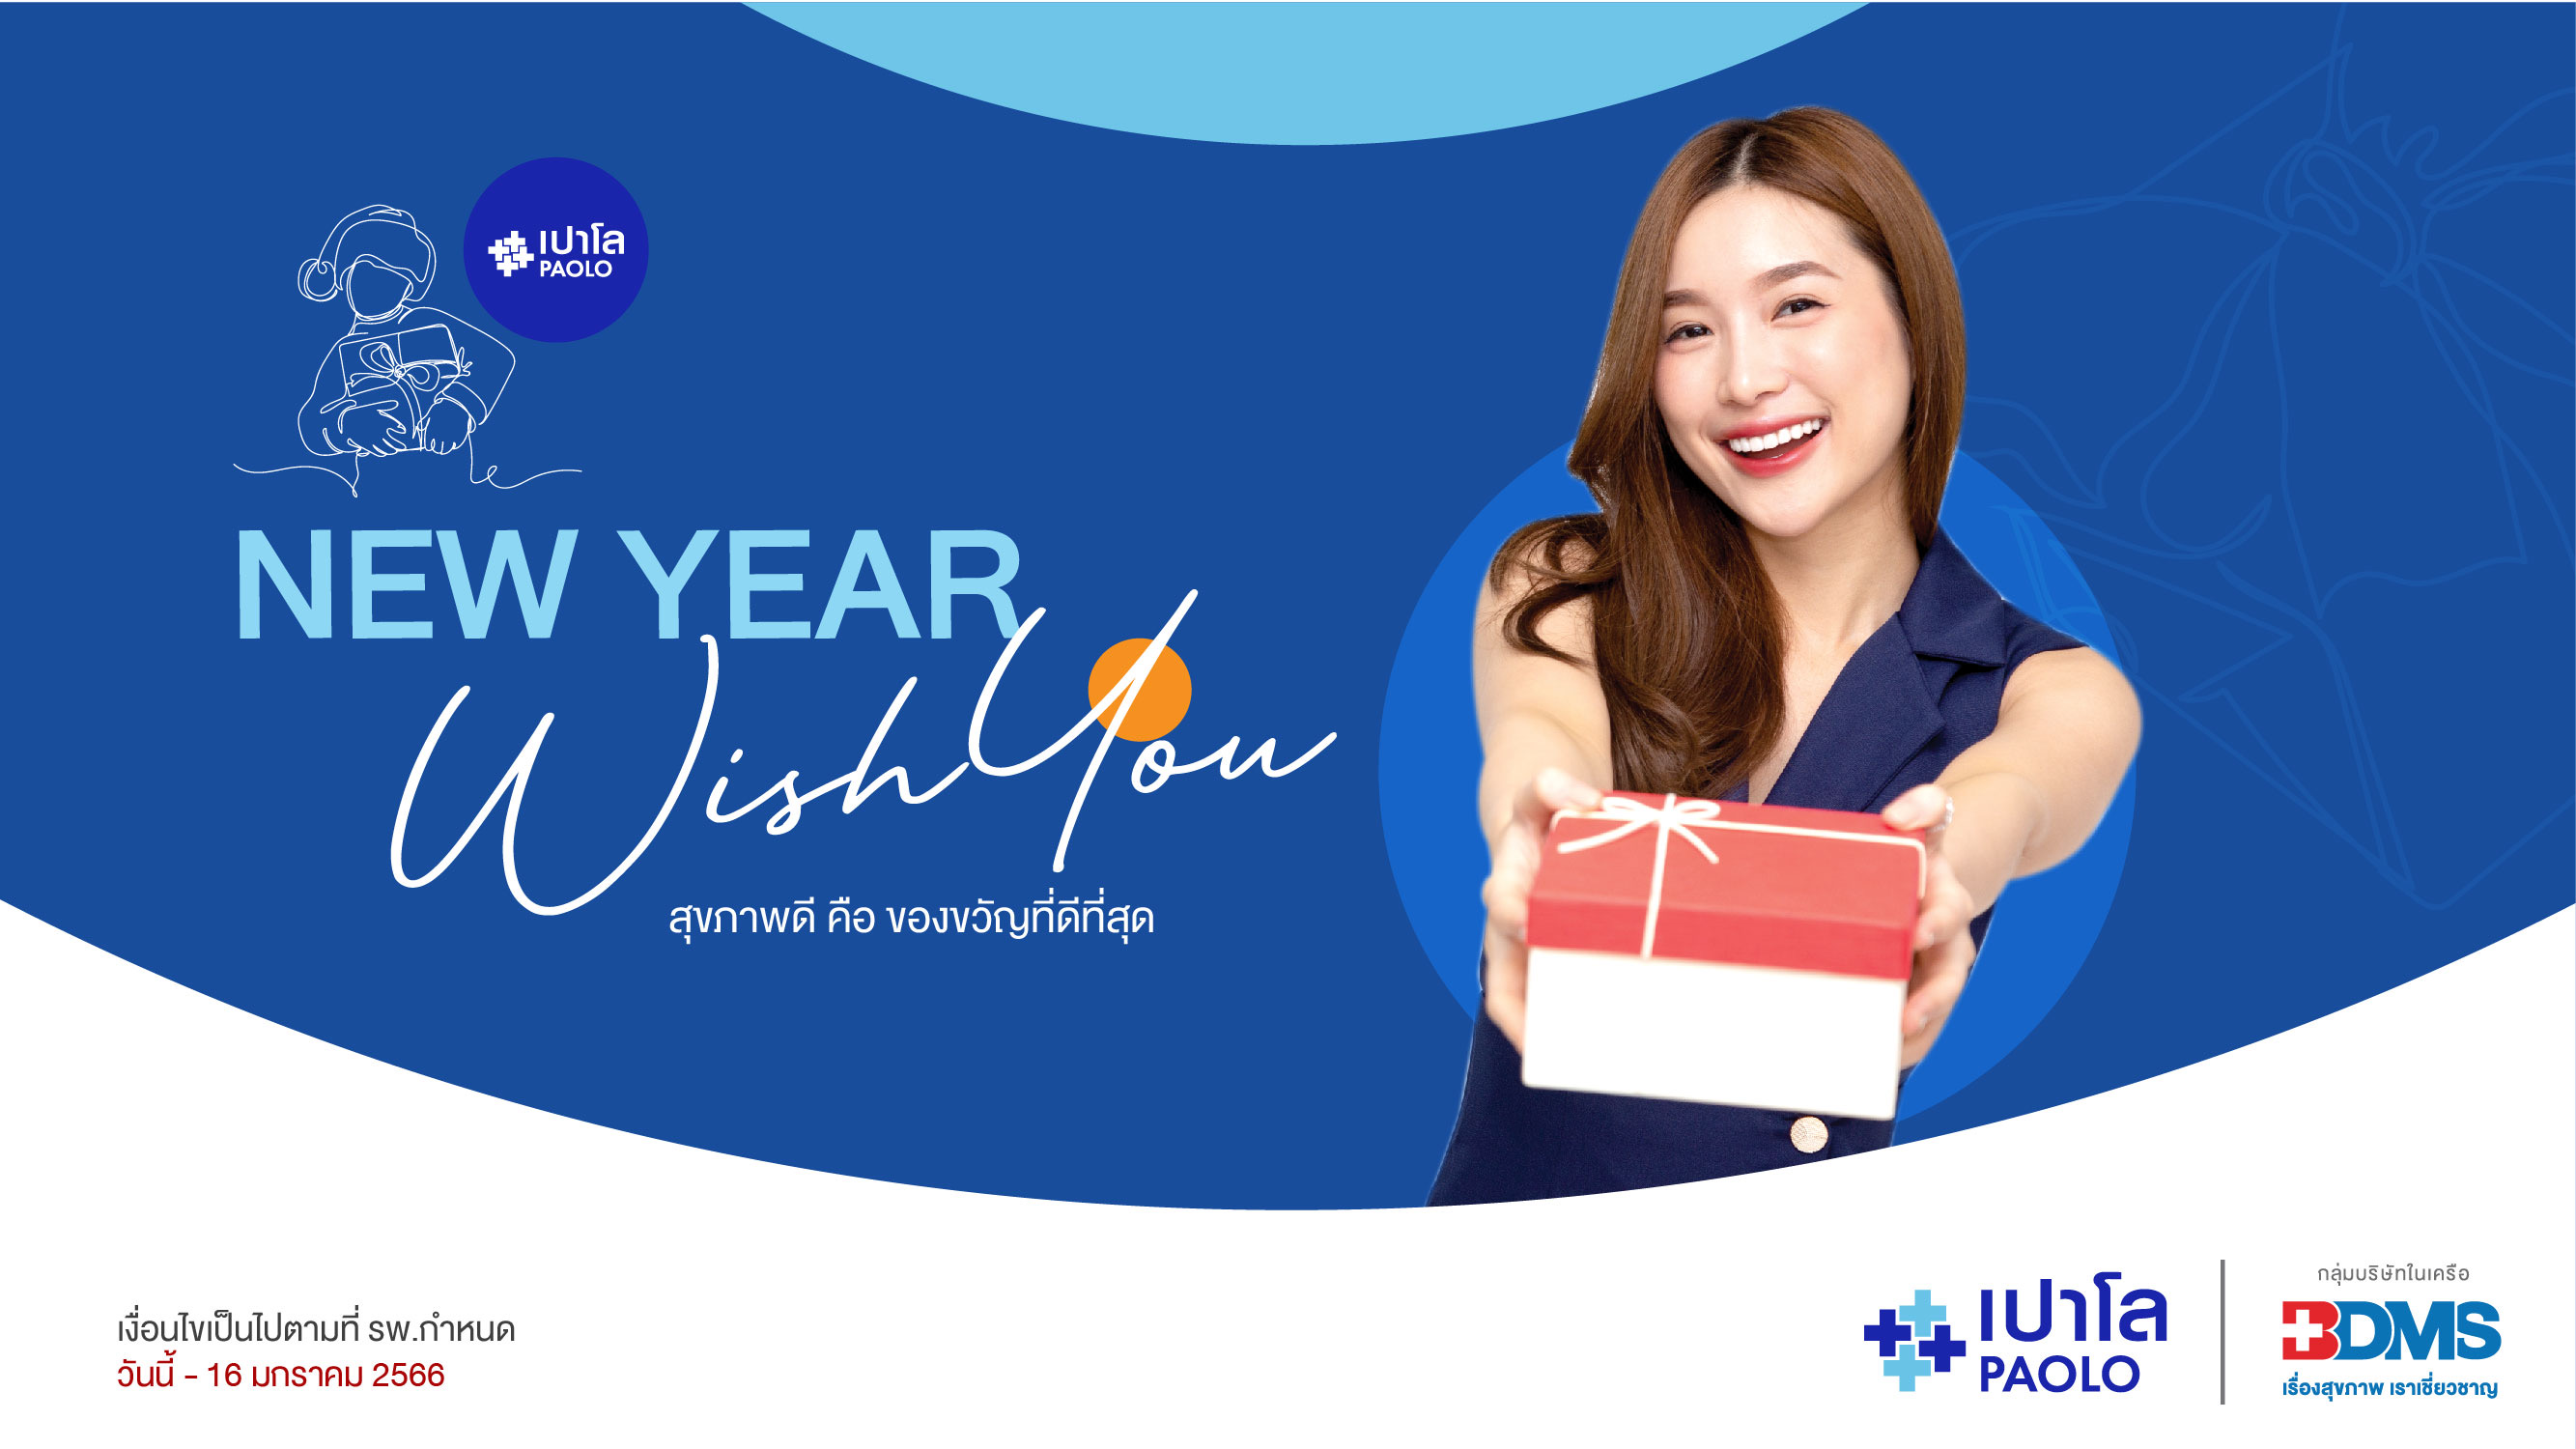 โปรแกรมตรวจสุขภาพ New year wish you ต้อนรับปี 2023